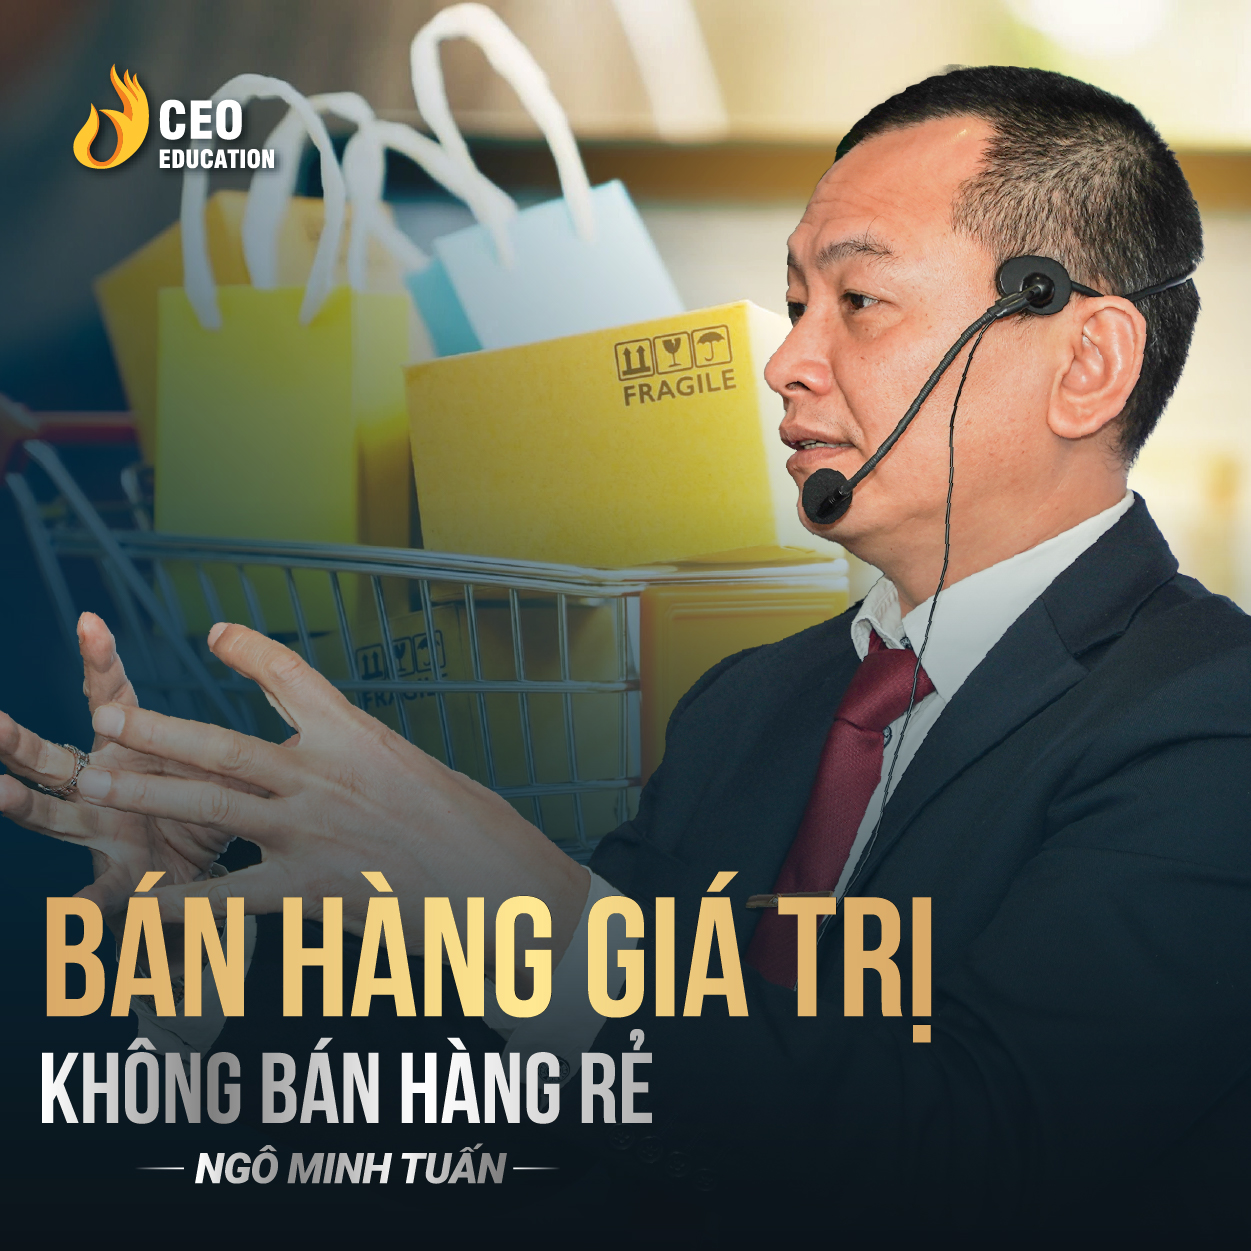 Tư duy giúp bạn bán hàng giá cao | Ngô Minh Tuấn | Học Viện CEO Việt Nam